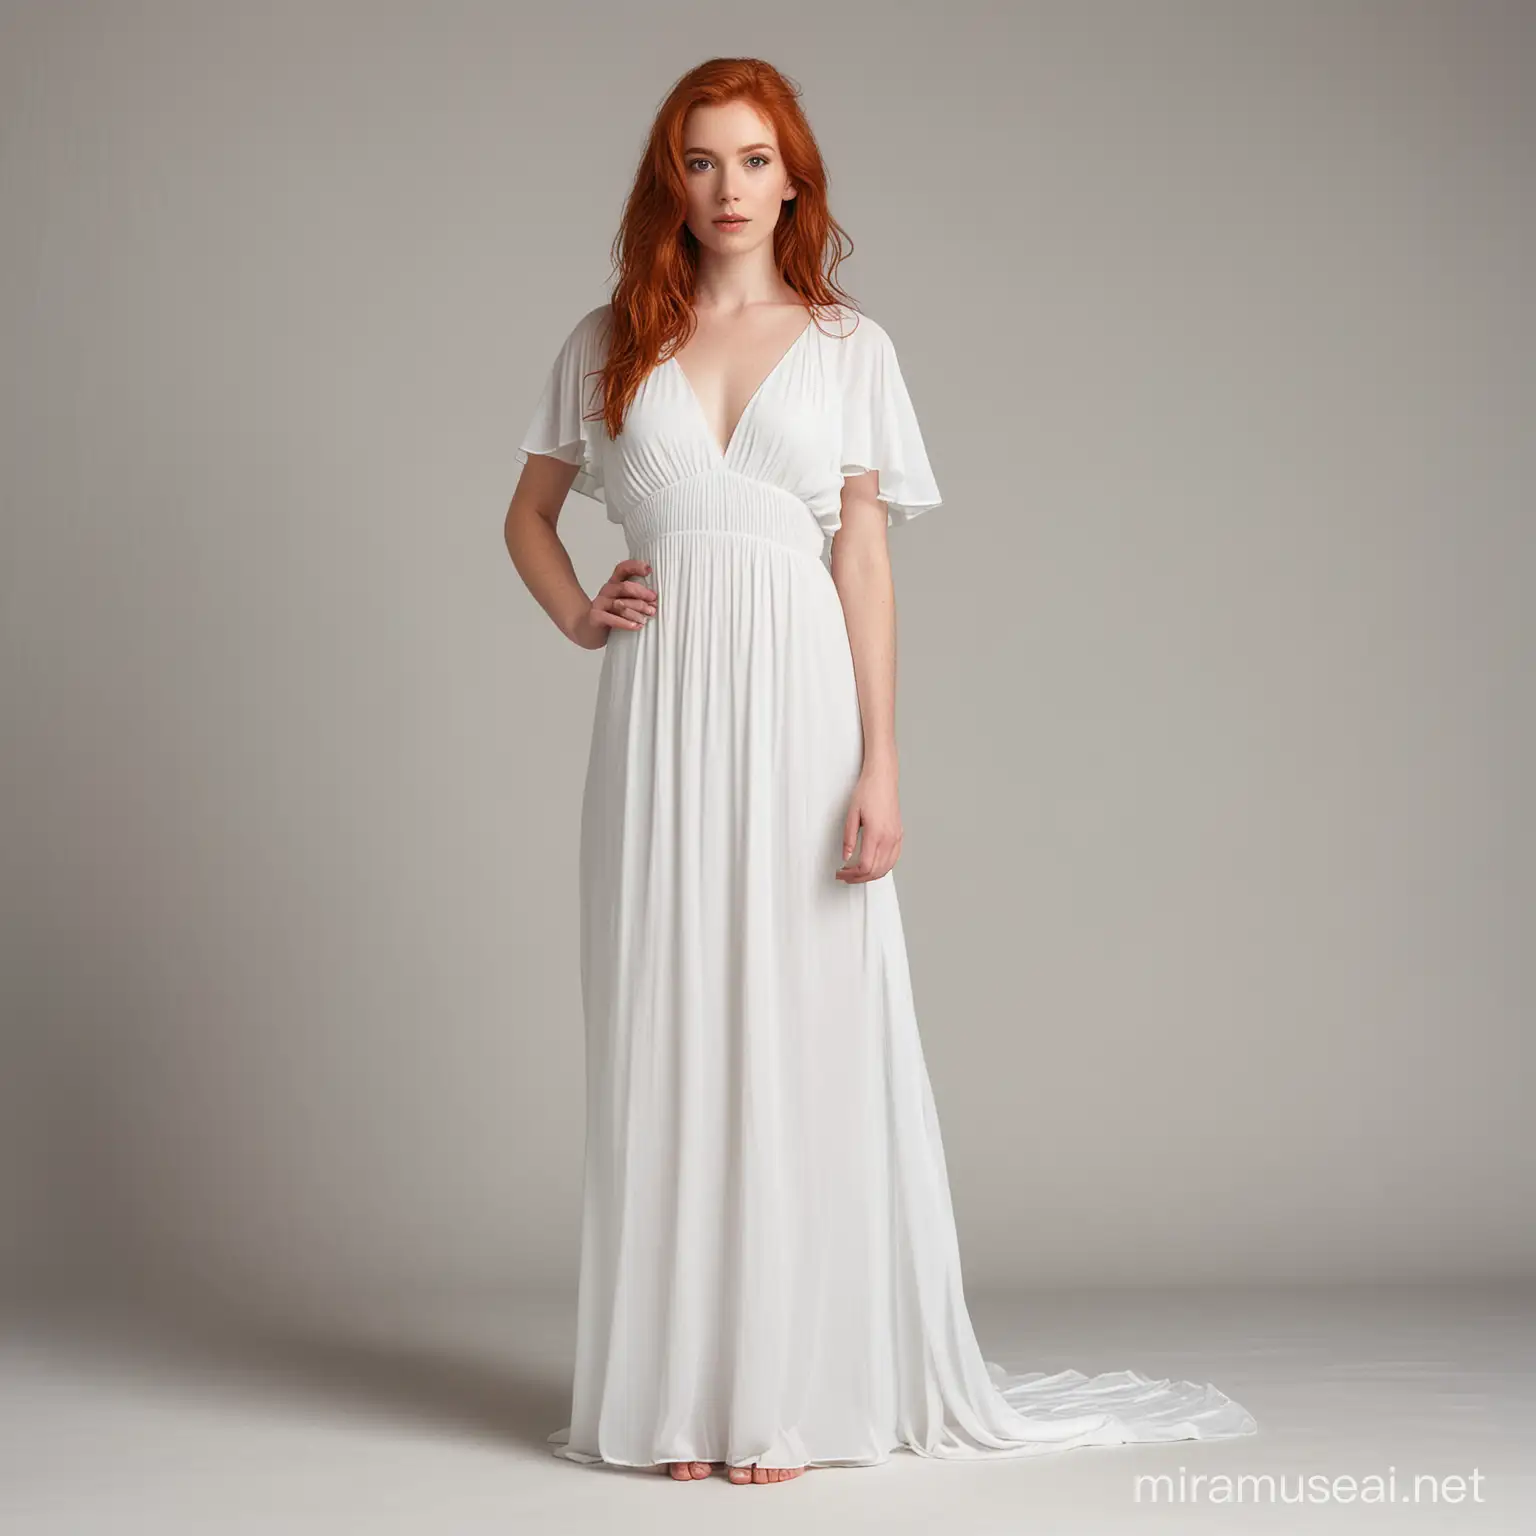 Redheaded Model in Elegant White Dress Portrait